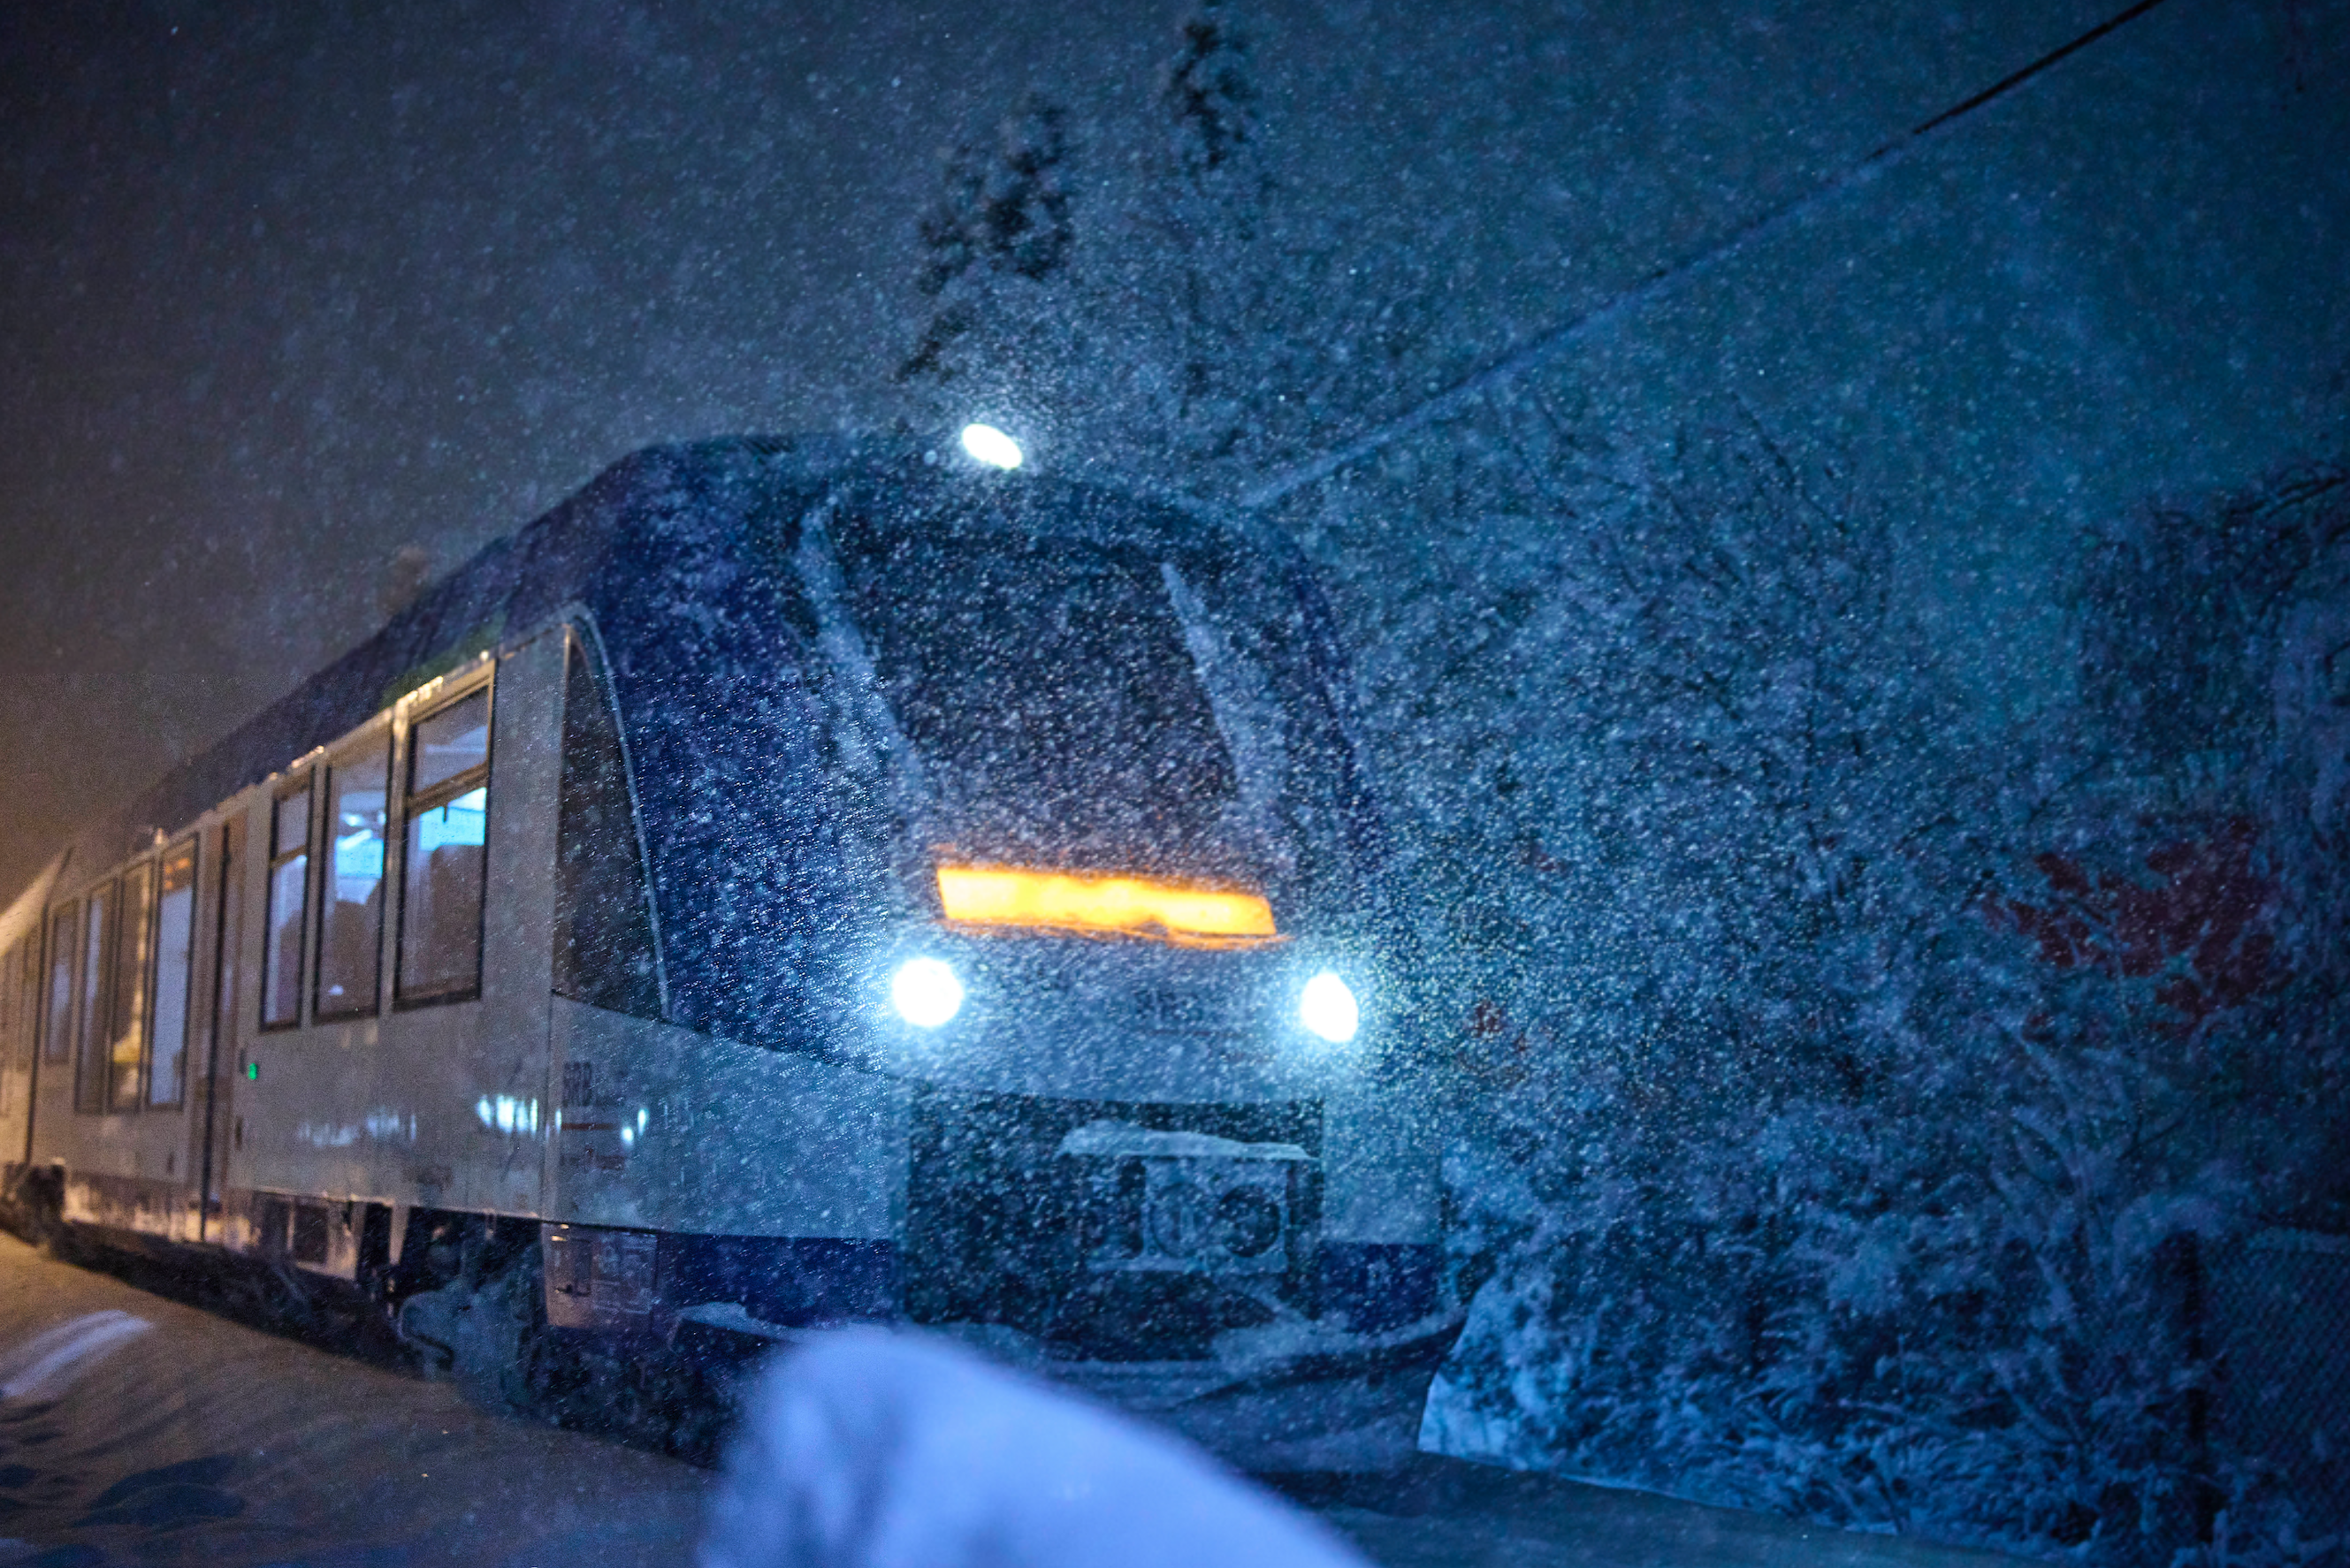 Gute Nachrichten für Bahnreisende: An Weihnachten wird es laut dem GDL-Chef keine Streiks geben. (Symbolbild)